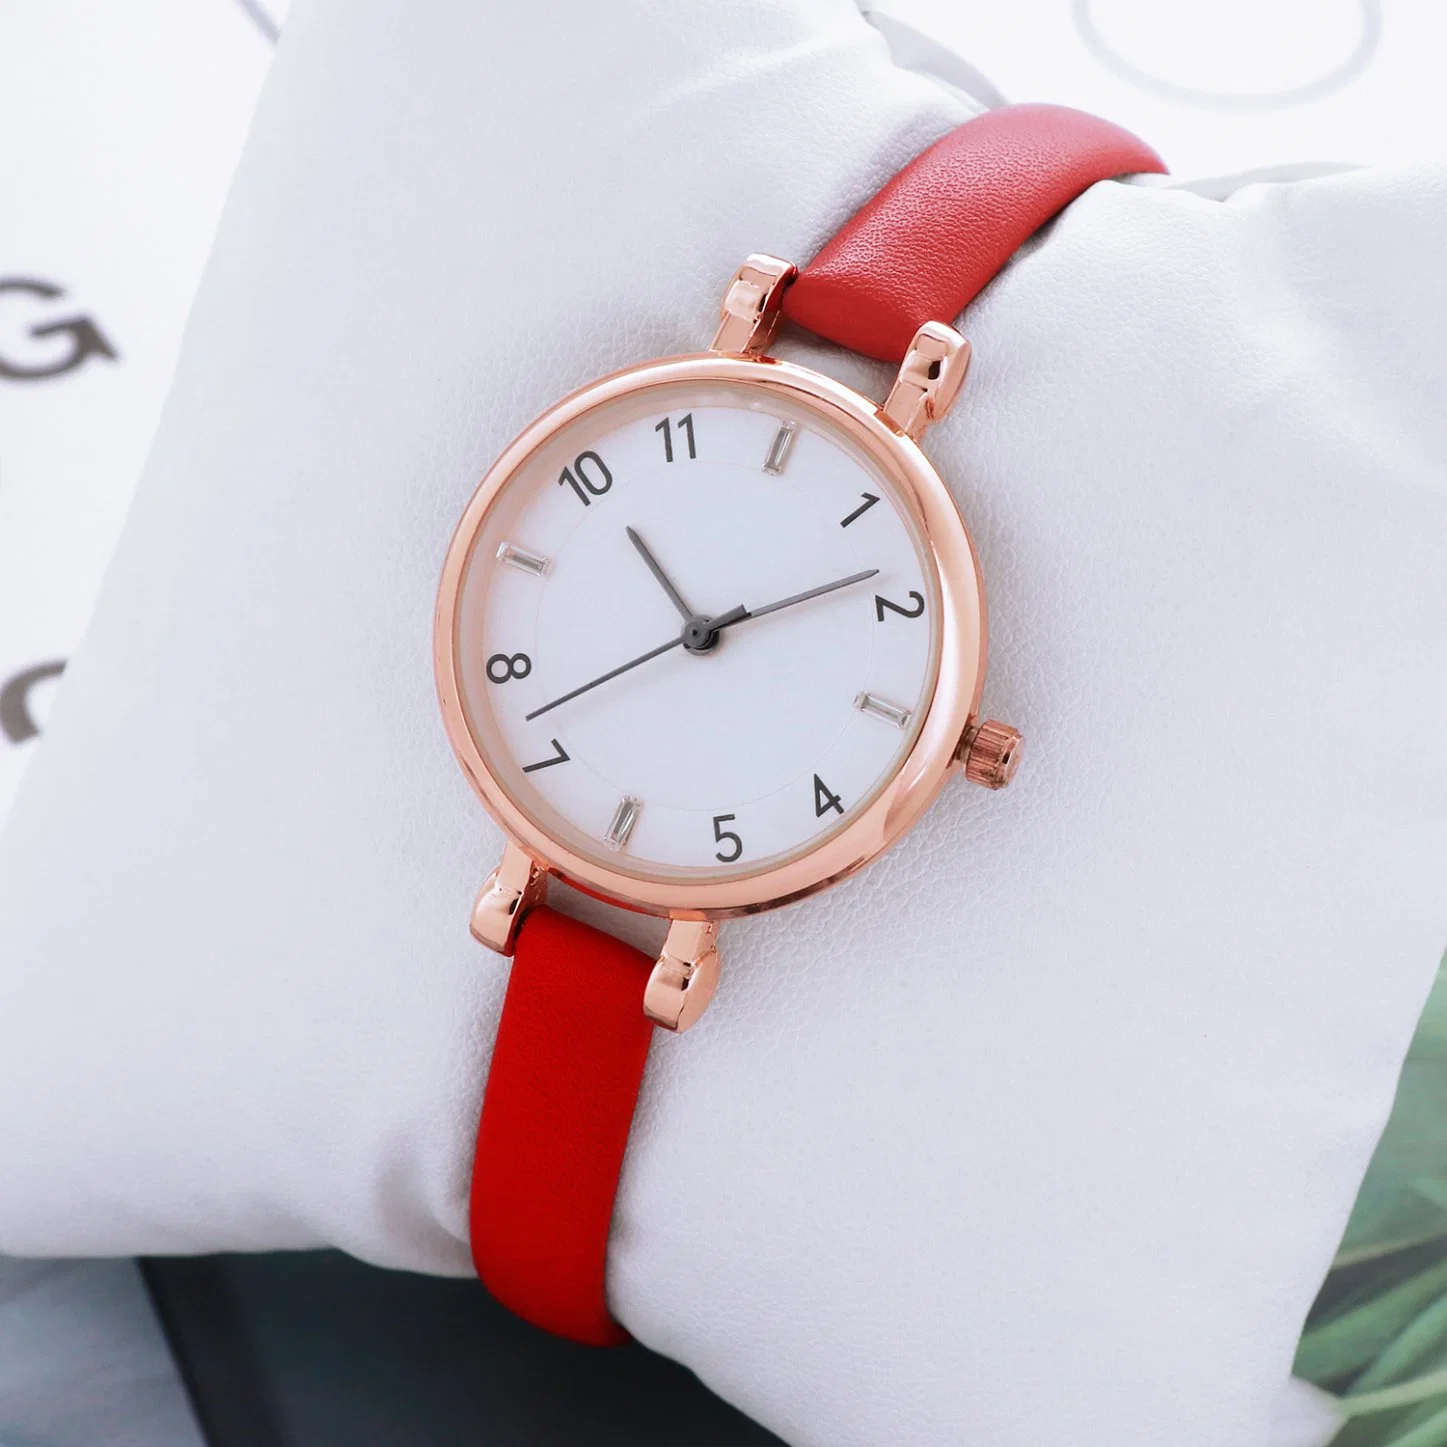 Lady Lederarmband Designer Alloy Fashion Handgelenk Quarz Uhr